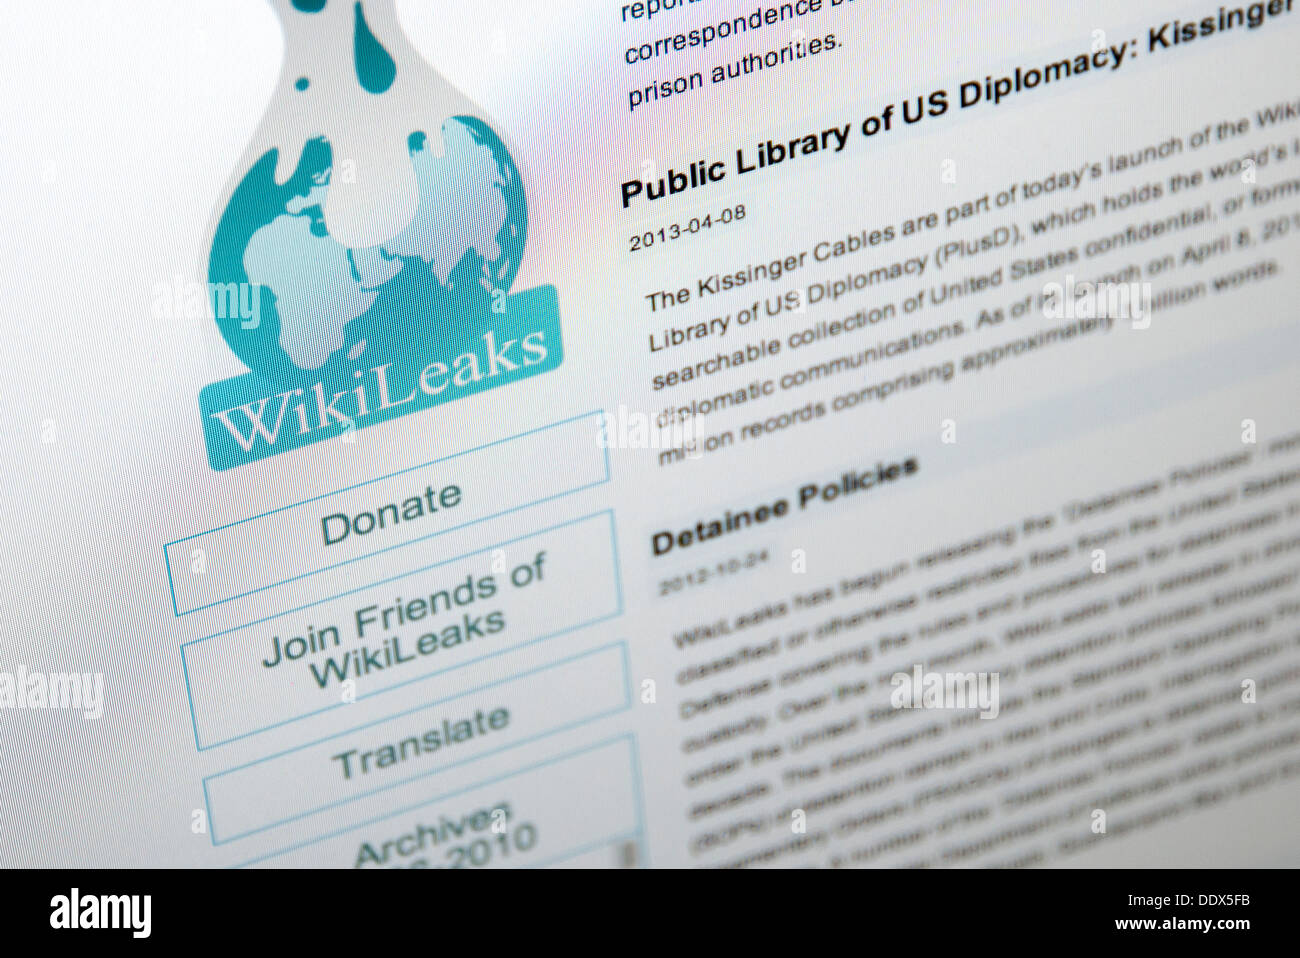 wikileaks website Stock Photo